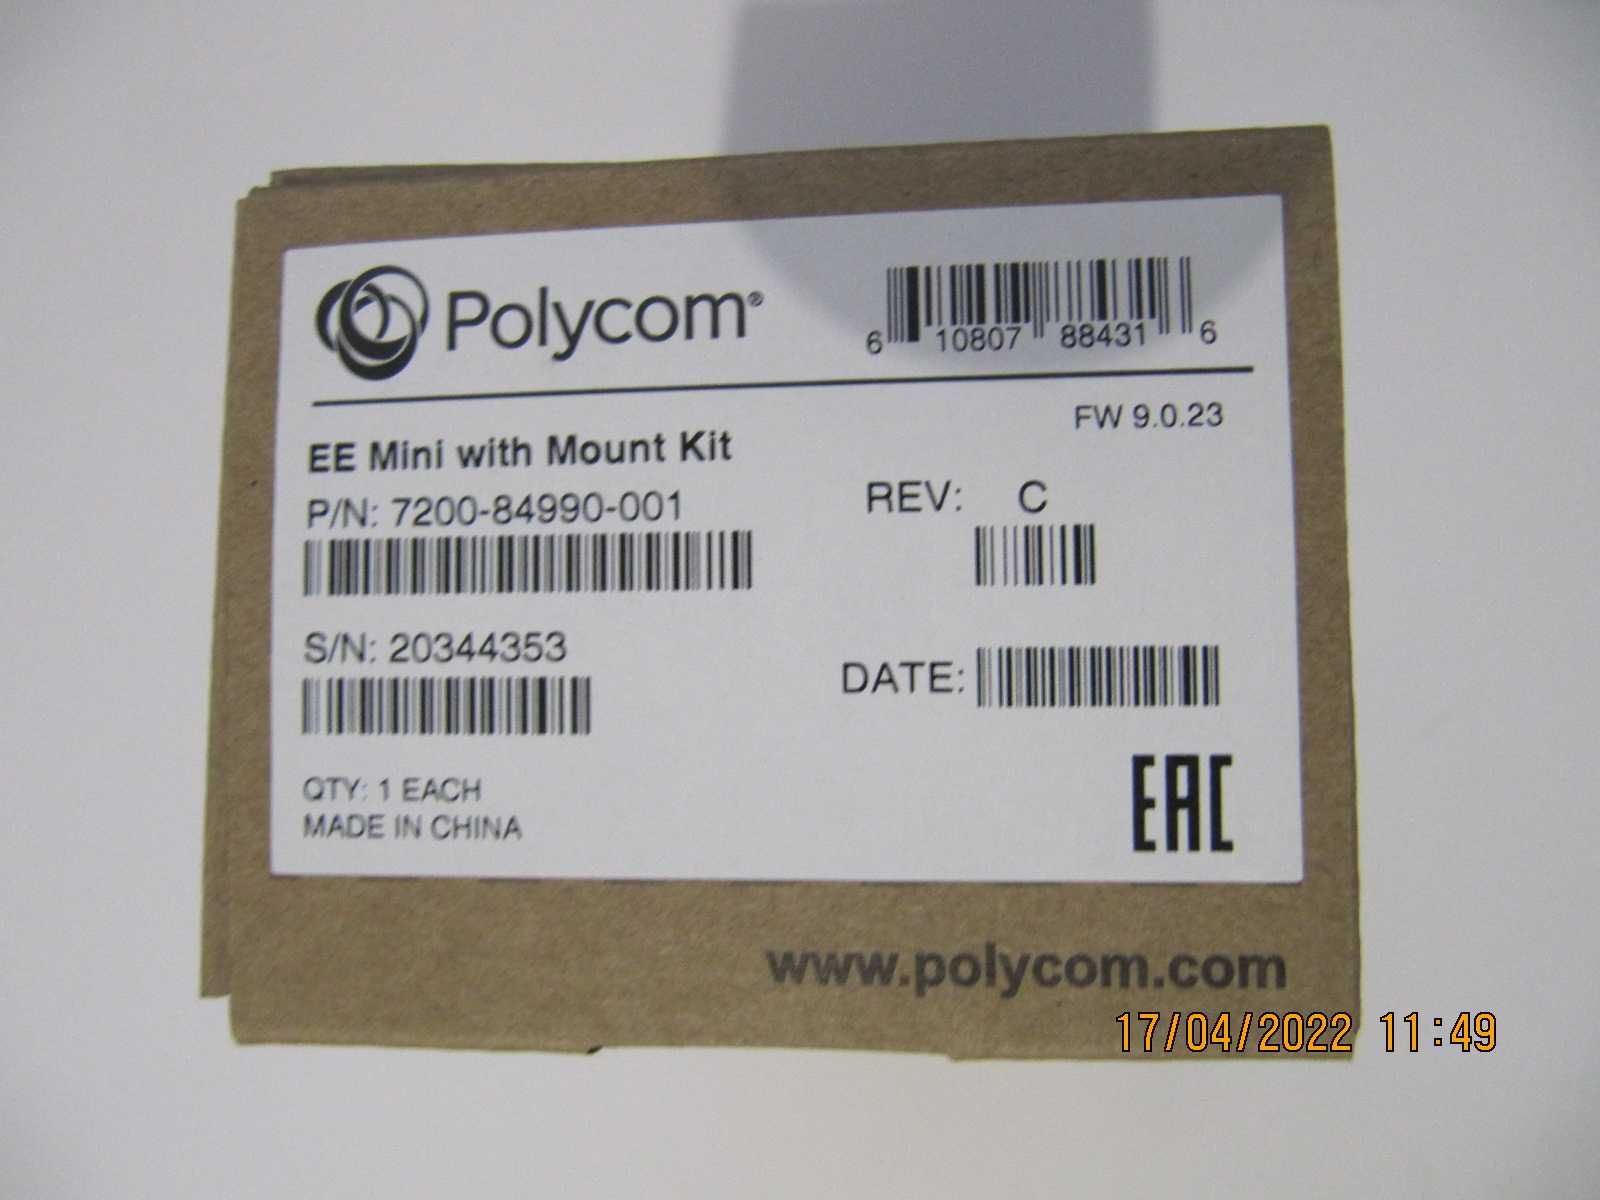 HD видео камера Polycom EE Mini